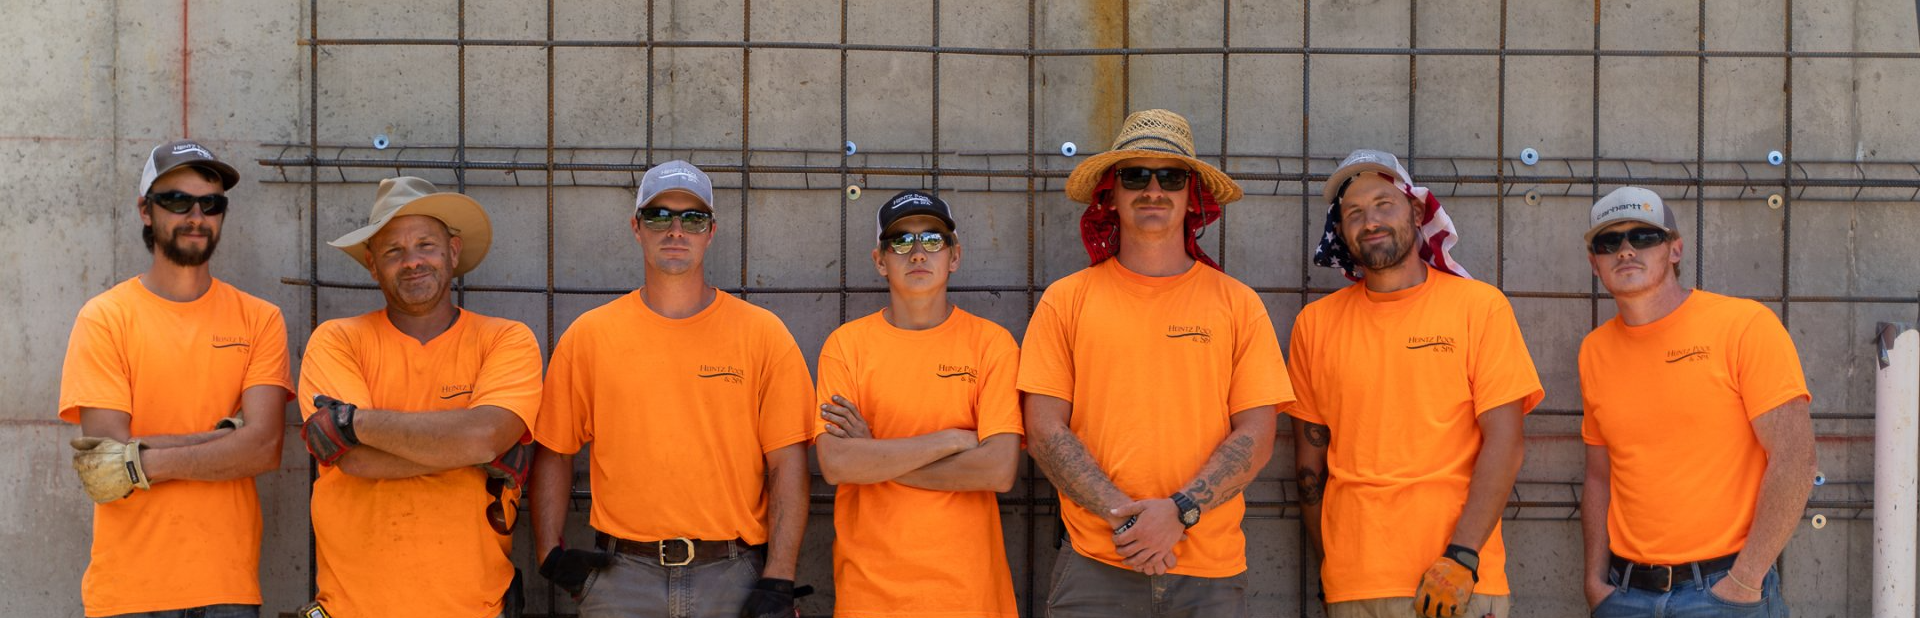 Heintz Pool & Spa team in an orange uniform standing side by side